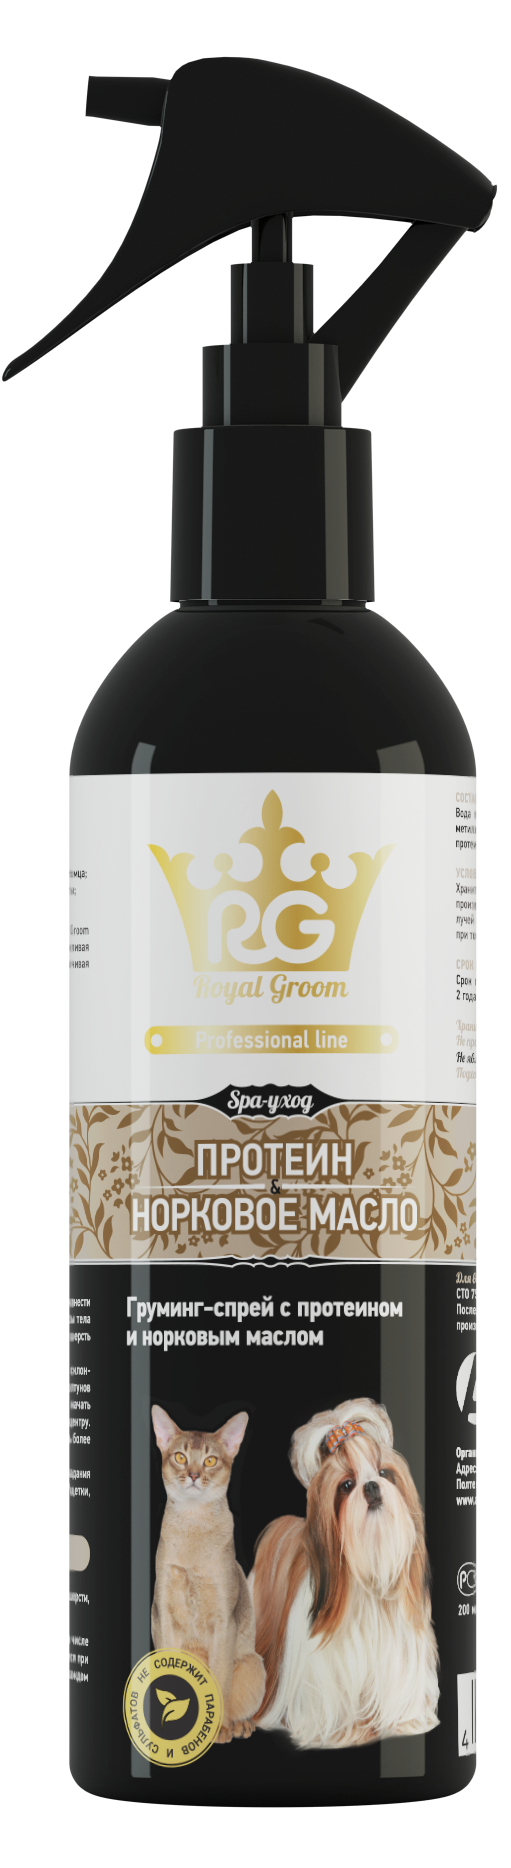 Груминг-спрей для всех видов животных Royal groom 200 мл протеин и норковое масло